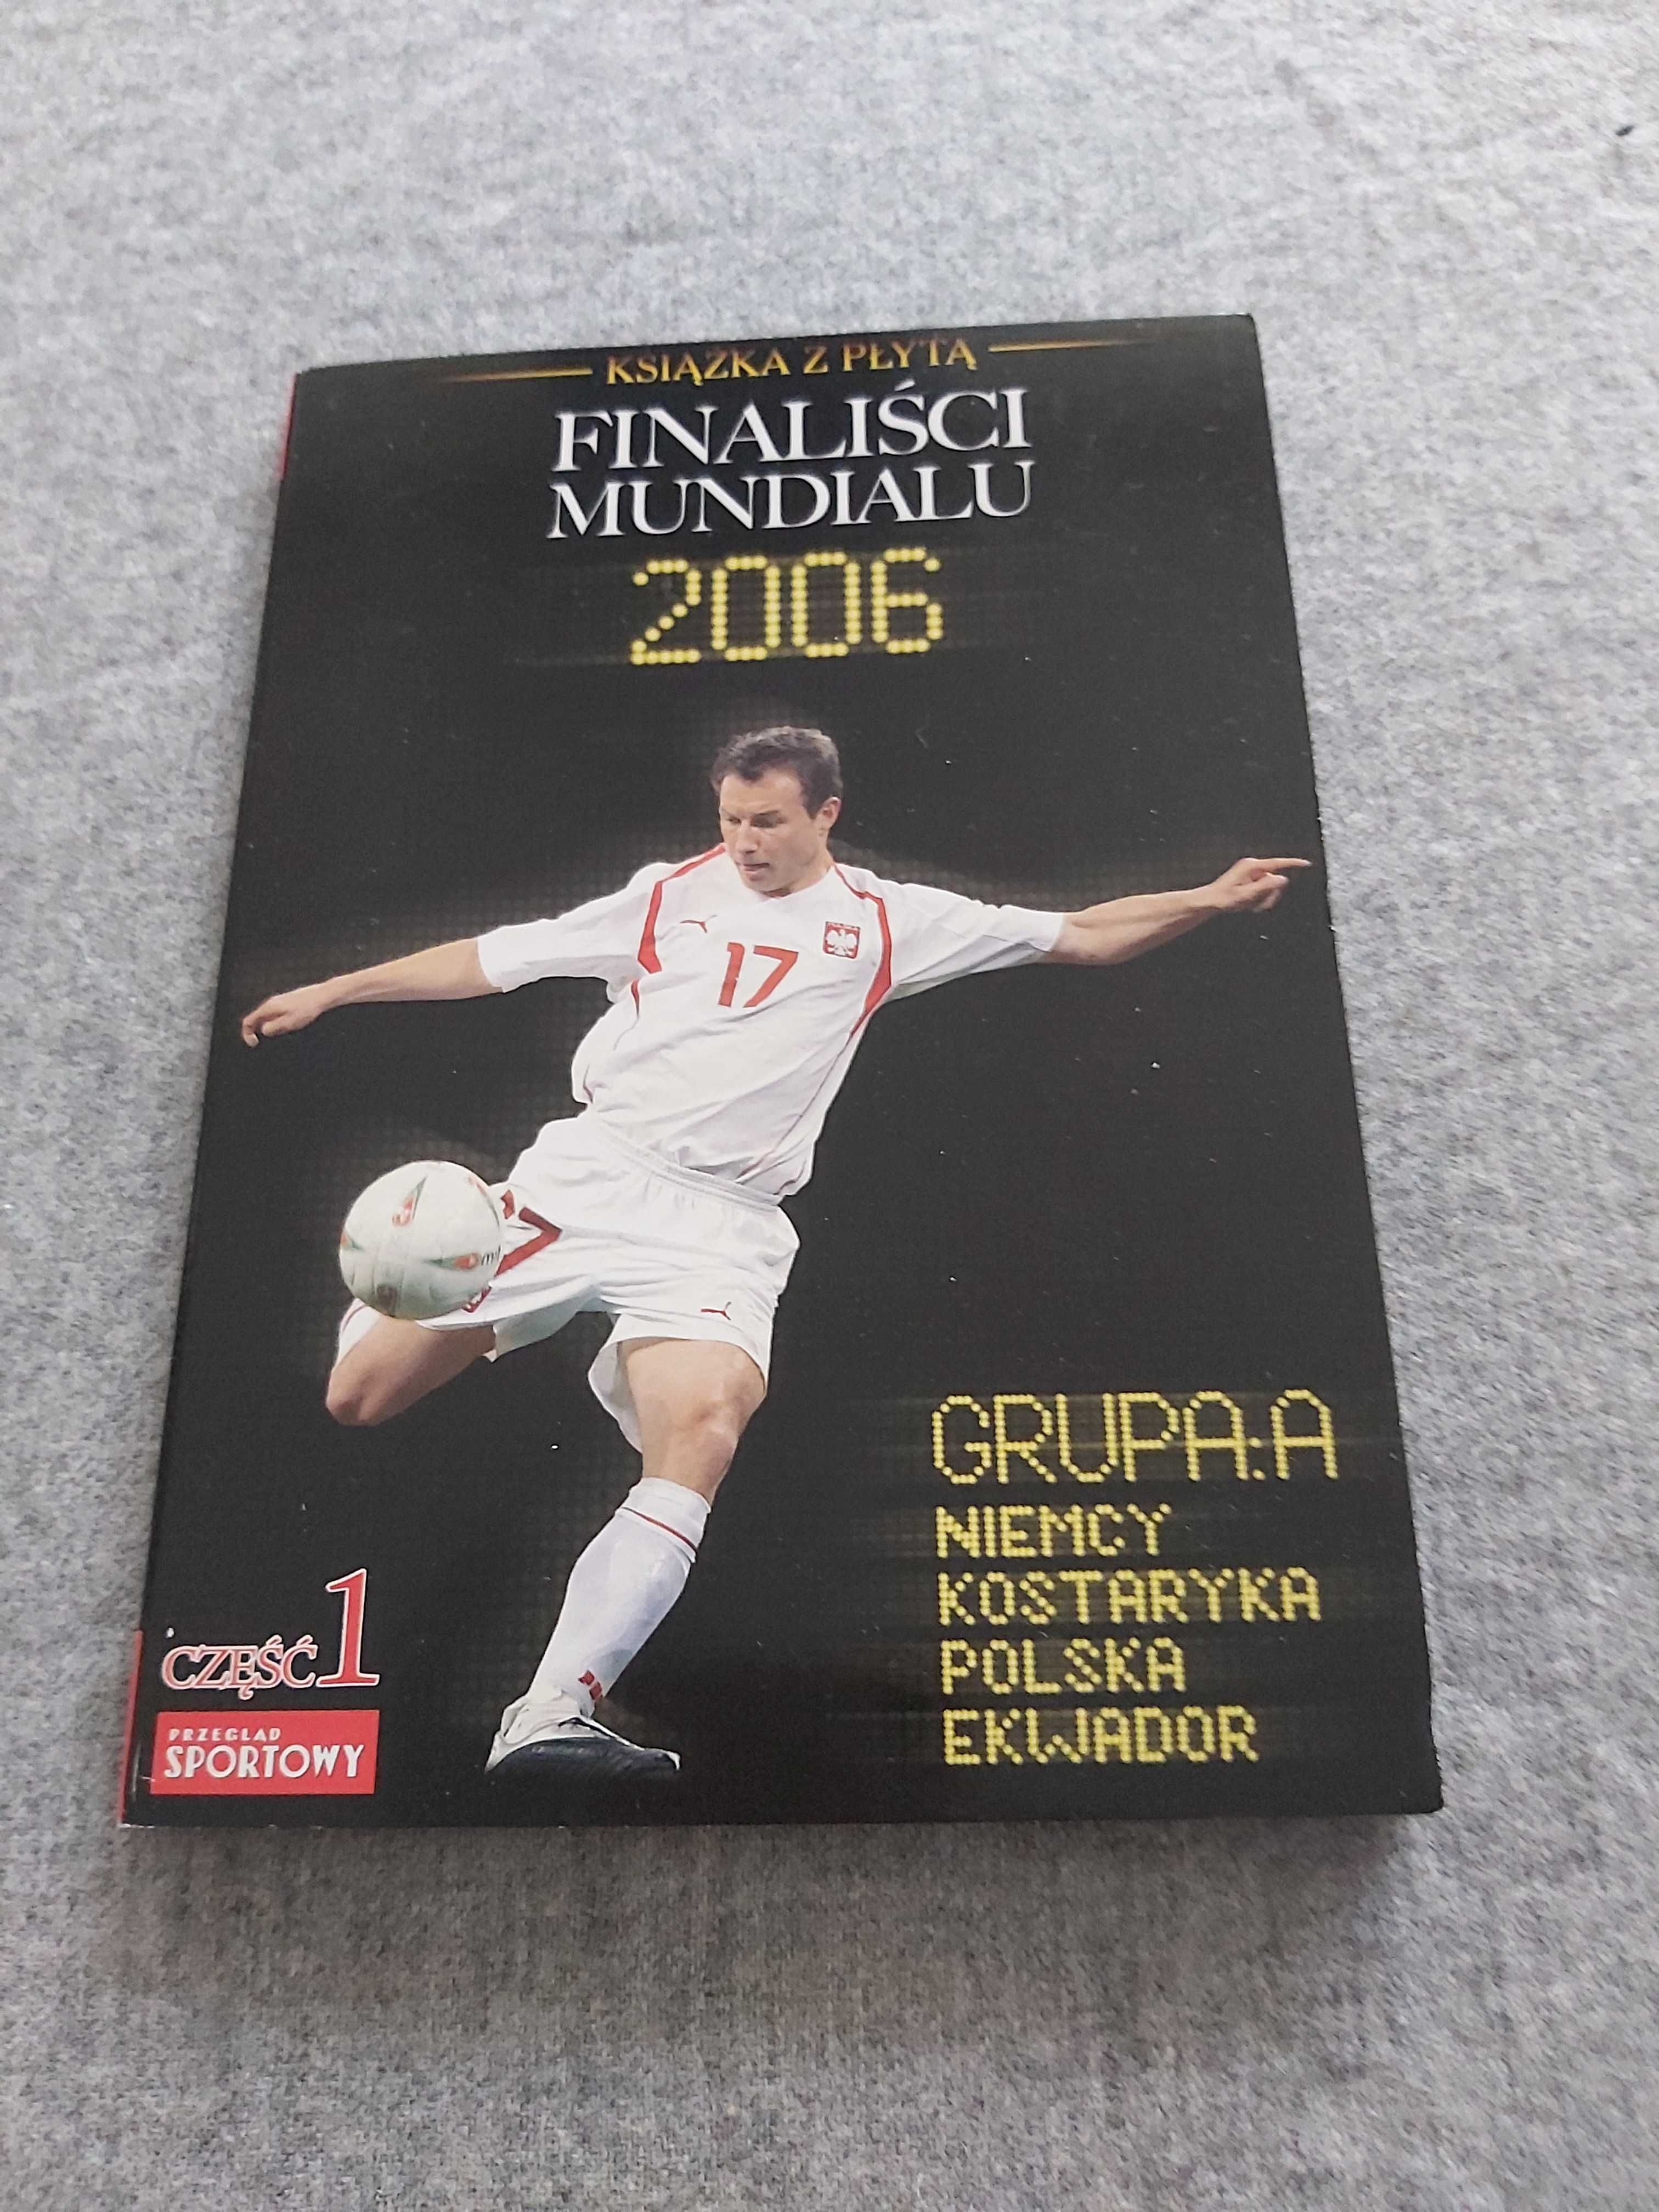 Finaliści Mundialu 2006 książka z płytą część 1